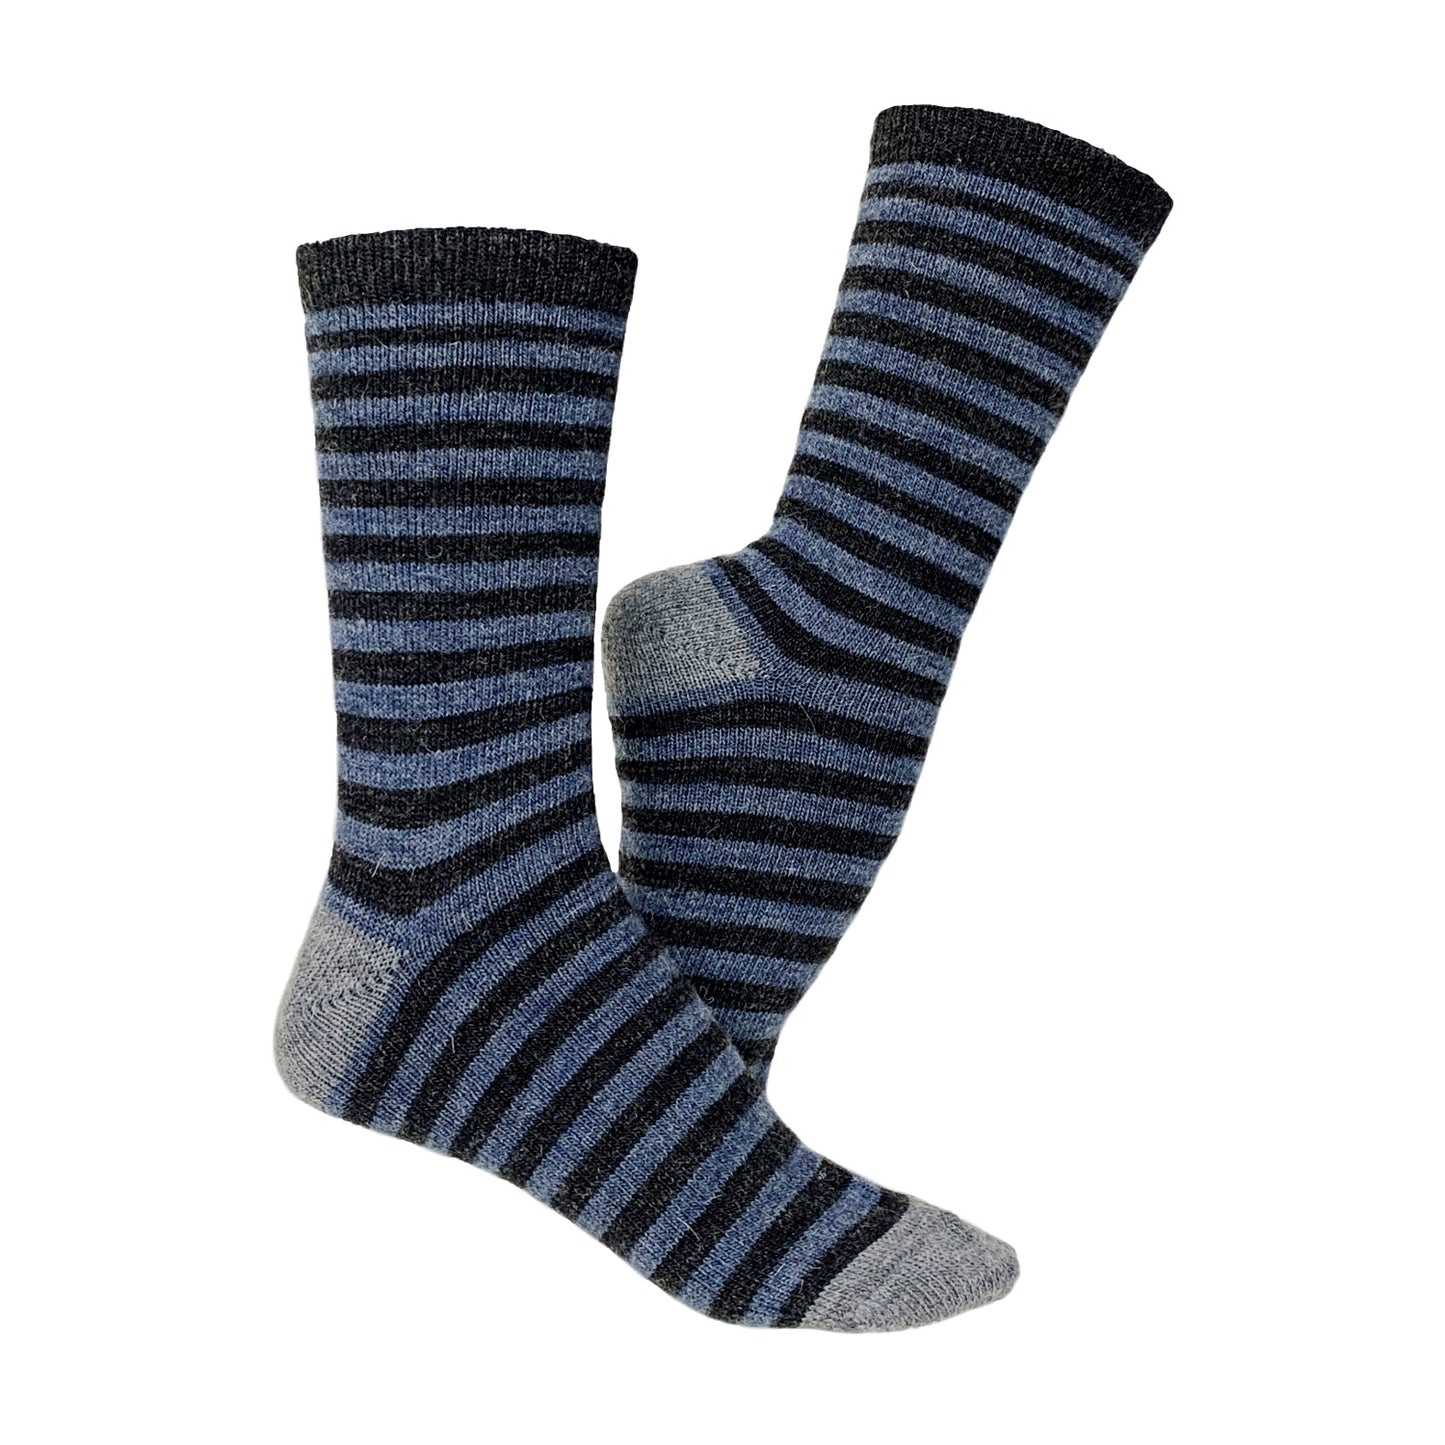 Chaussettes rayées en laine d'alpaga, 2 paires (bleu foncé)